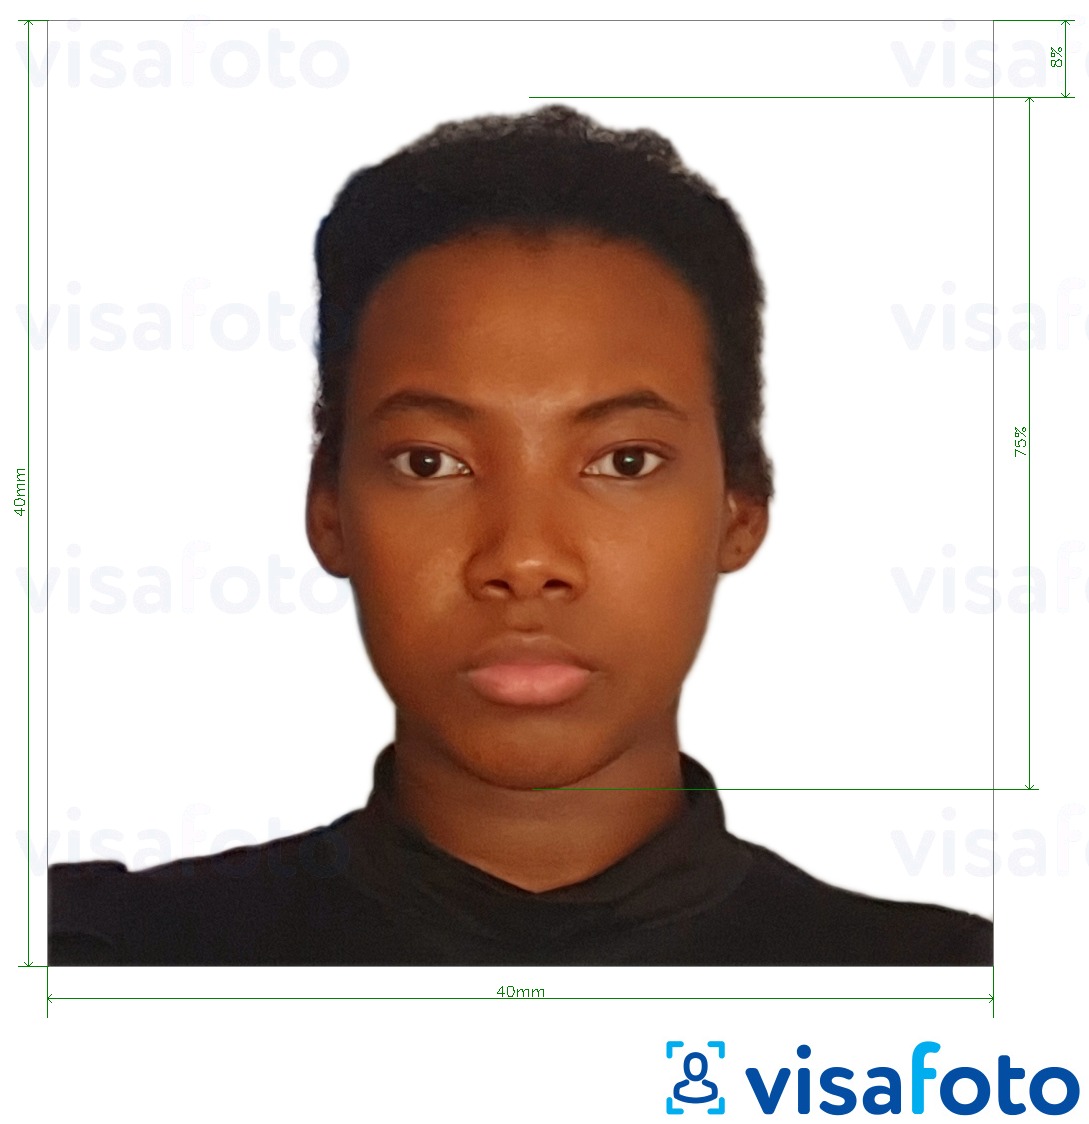 Exemples sur des photos pour Passeport du Cameroun 4x4 cm (40x40 mm) avec les spécifications de taille exactes